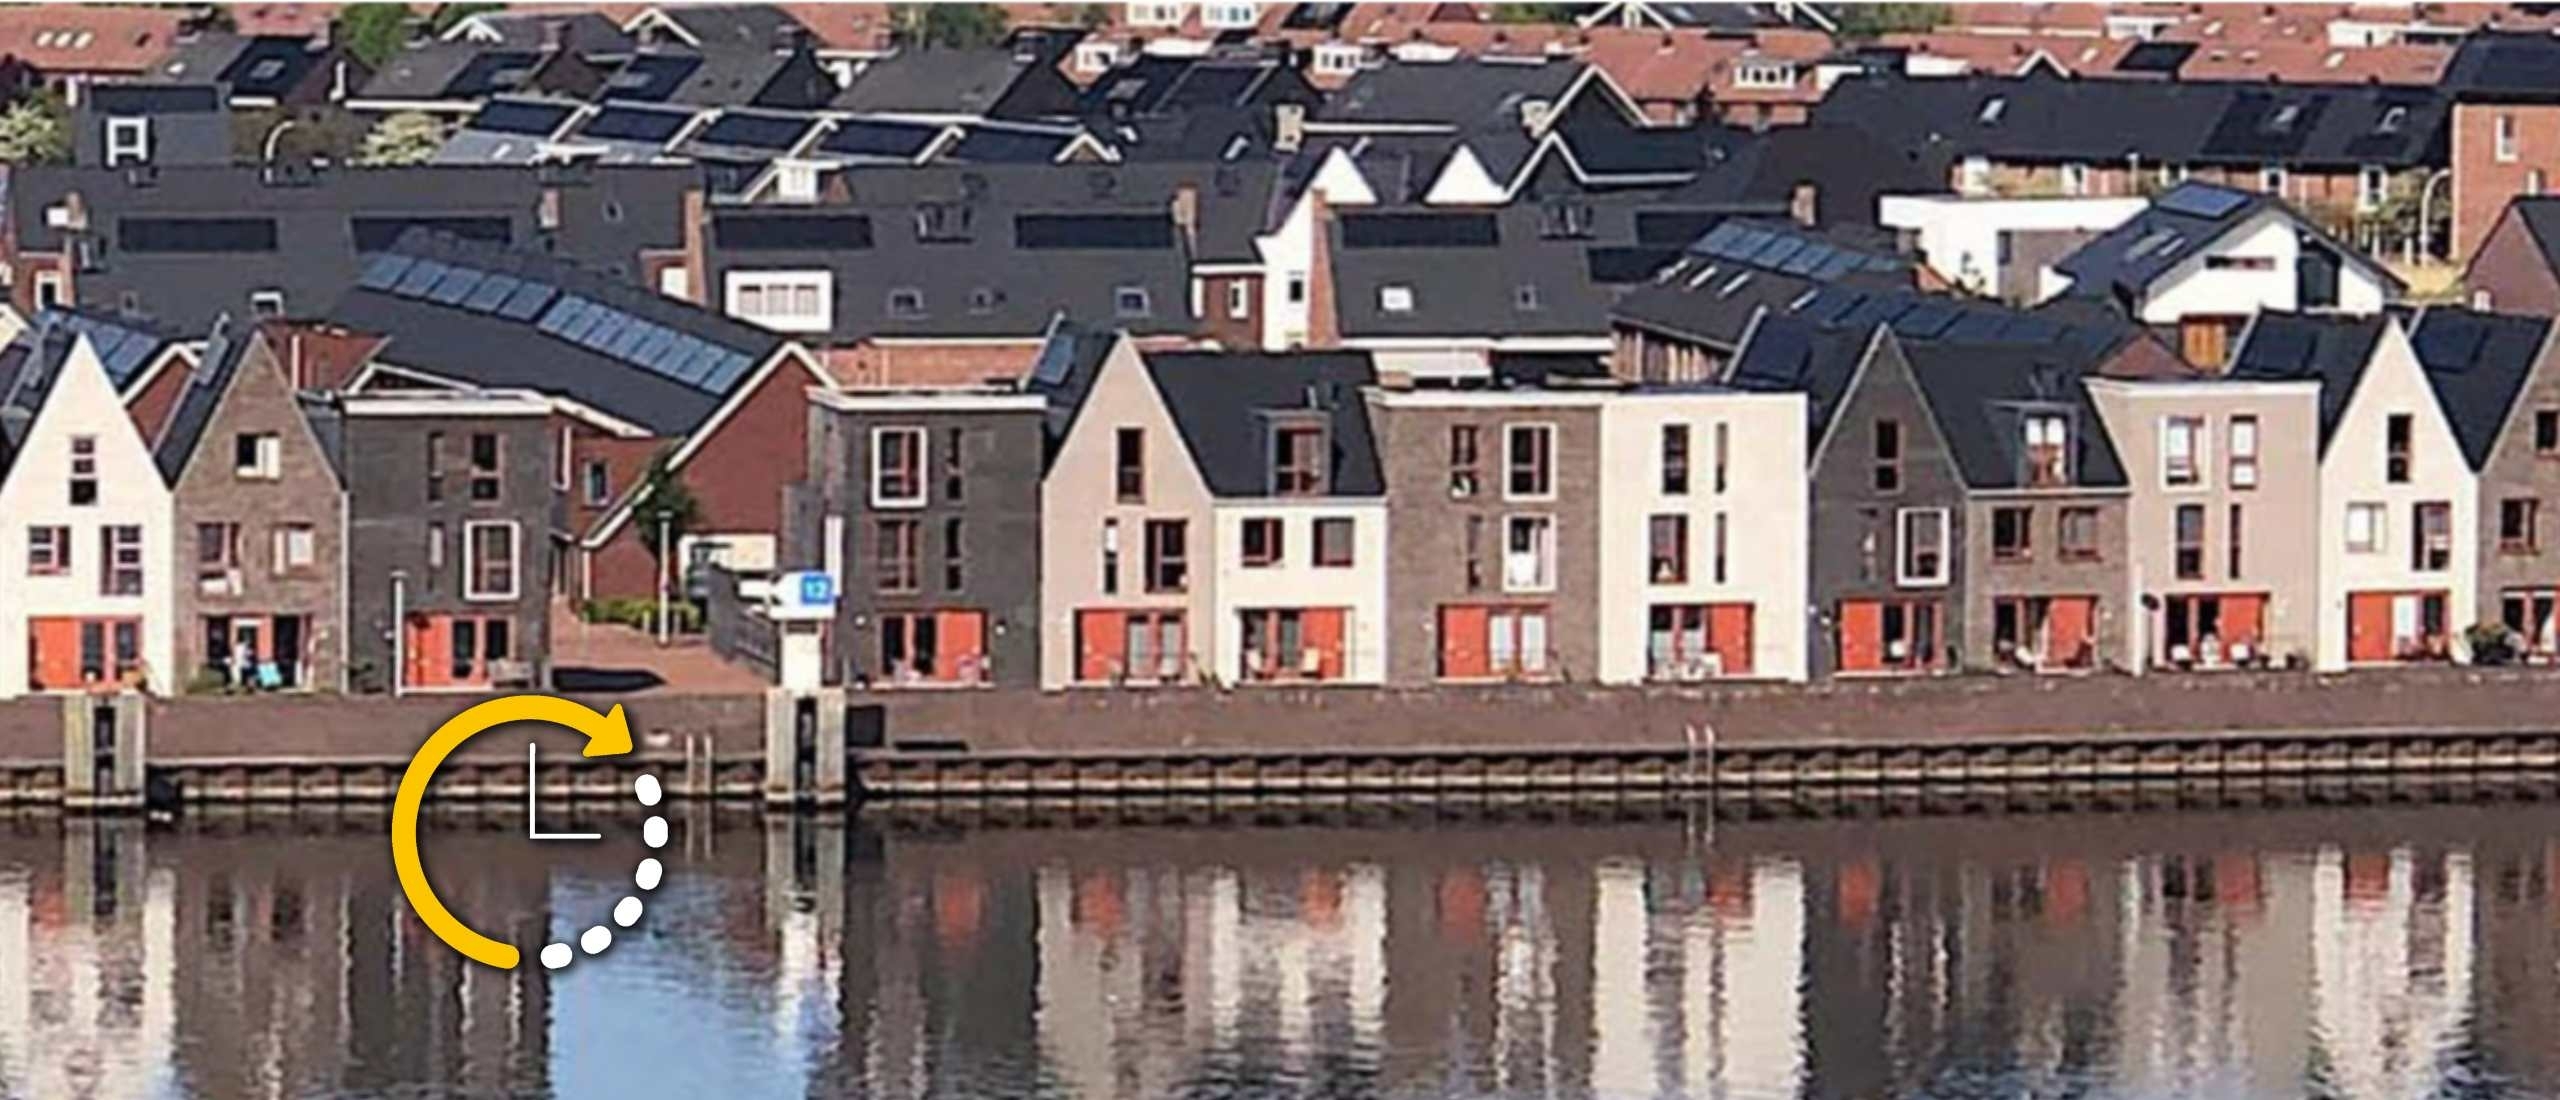 Wonen in Stadshagen Zwolle: Een Moderne Wijk voor een Duurzame Toekomst